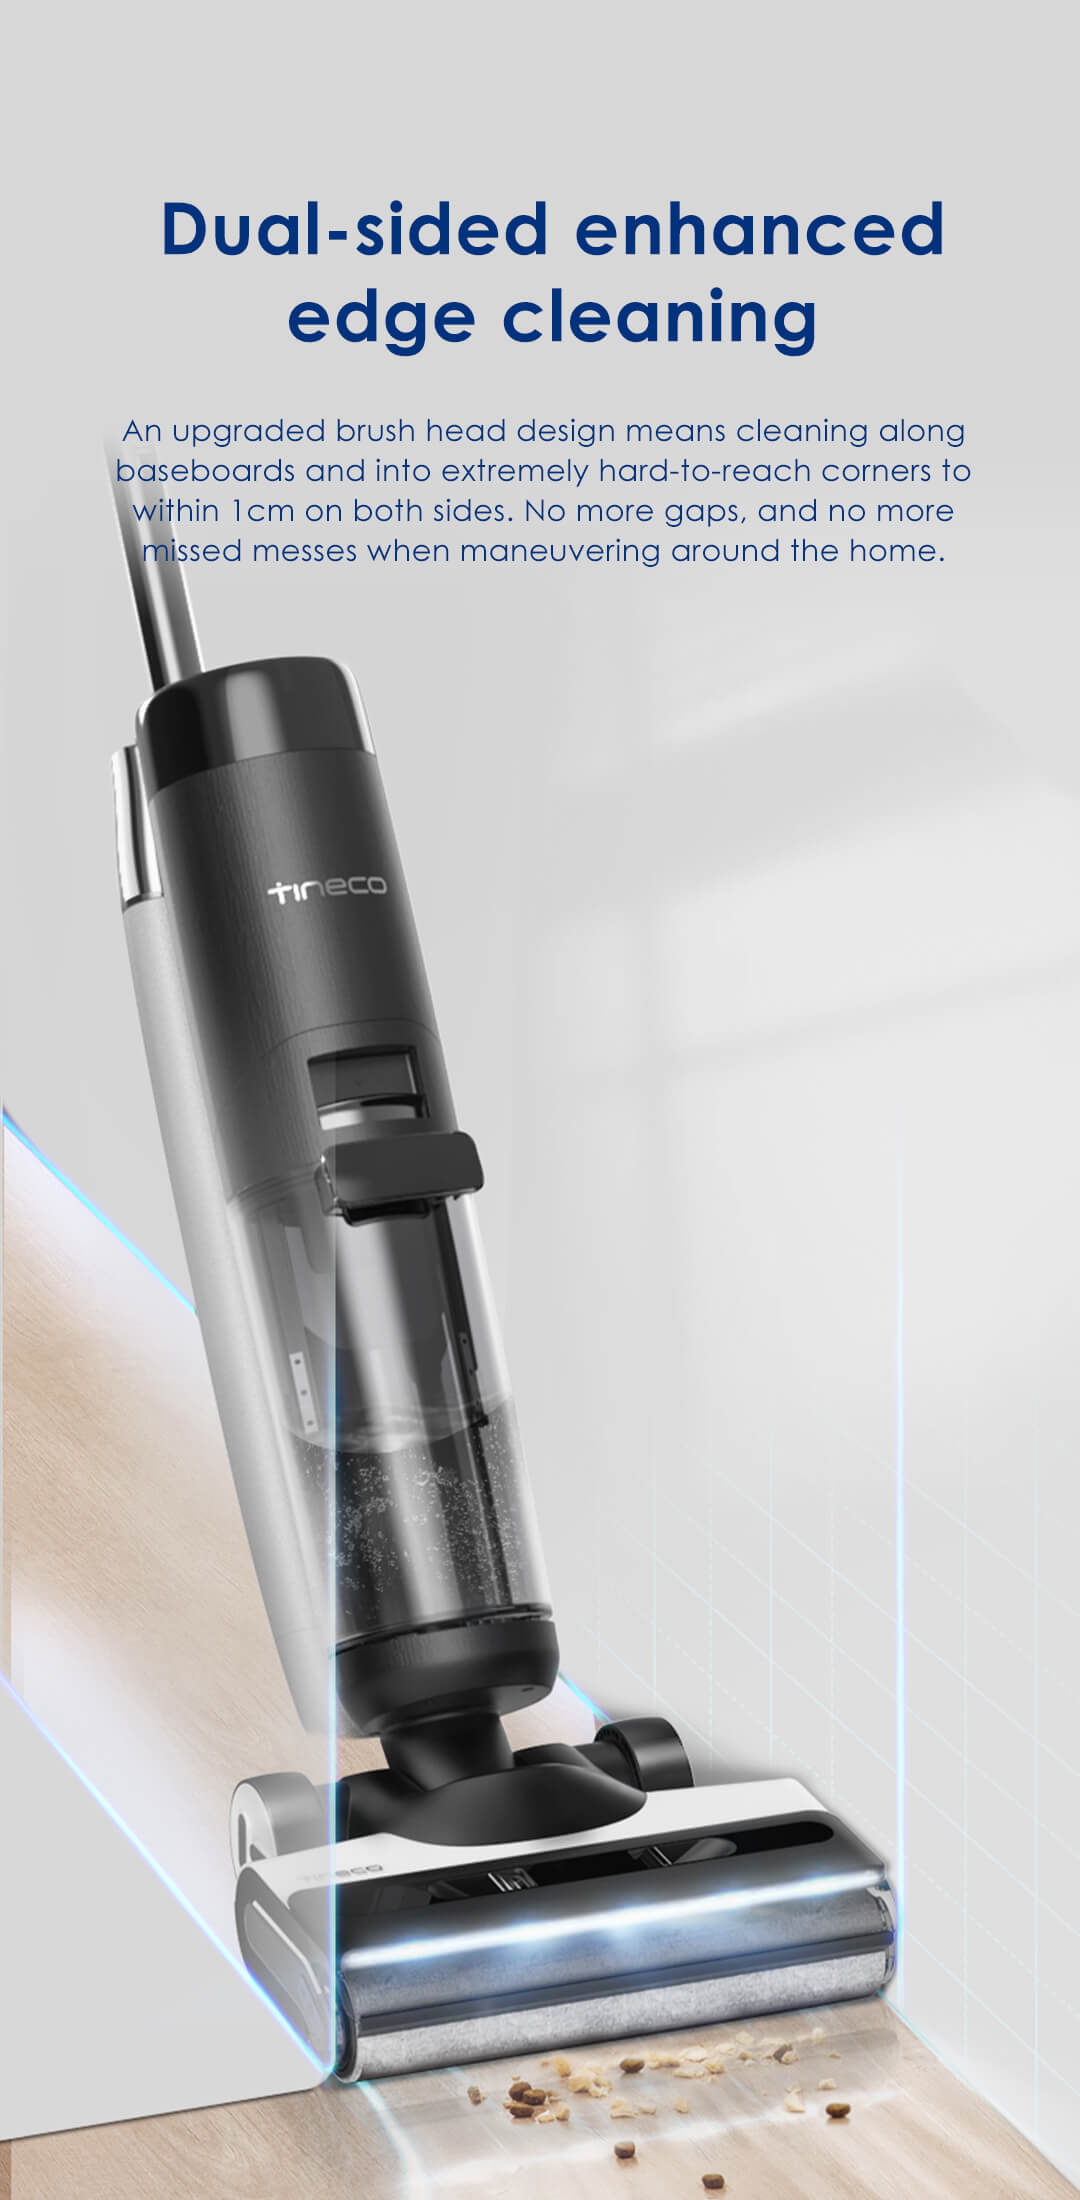 TTineco S7 PRO wet dry vacuum cleaner